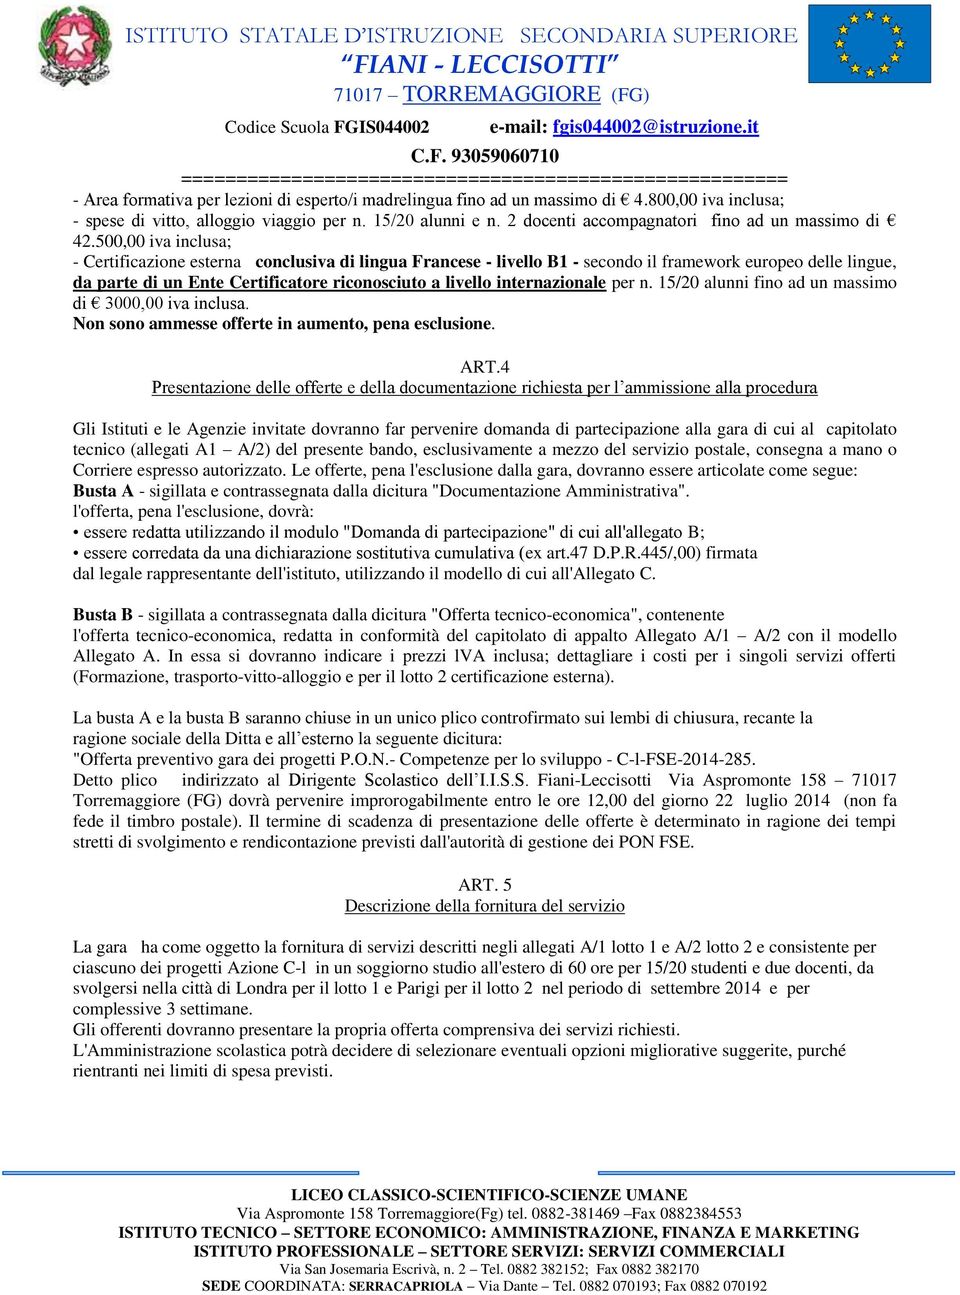 500,00 iva inclusa; - Certificazione esterna conclusiva di lingua Francese - livello B1 - secondo il framework europeo delle lingue, da parte di un Ente Certificatore riconosciuto a livello